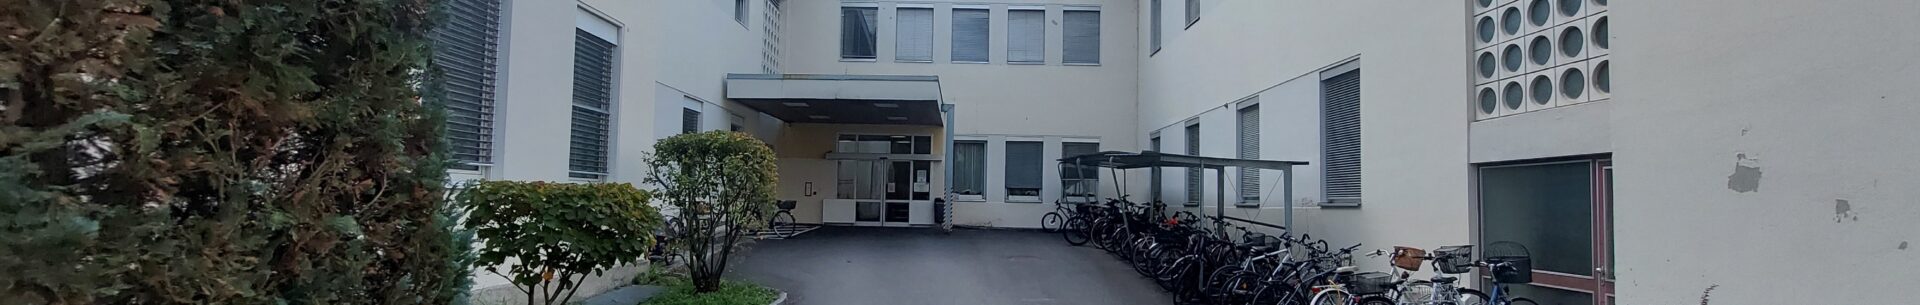 Zahraniční stáž v Klagenfurtu